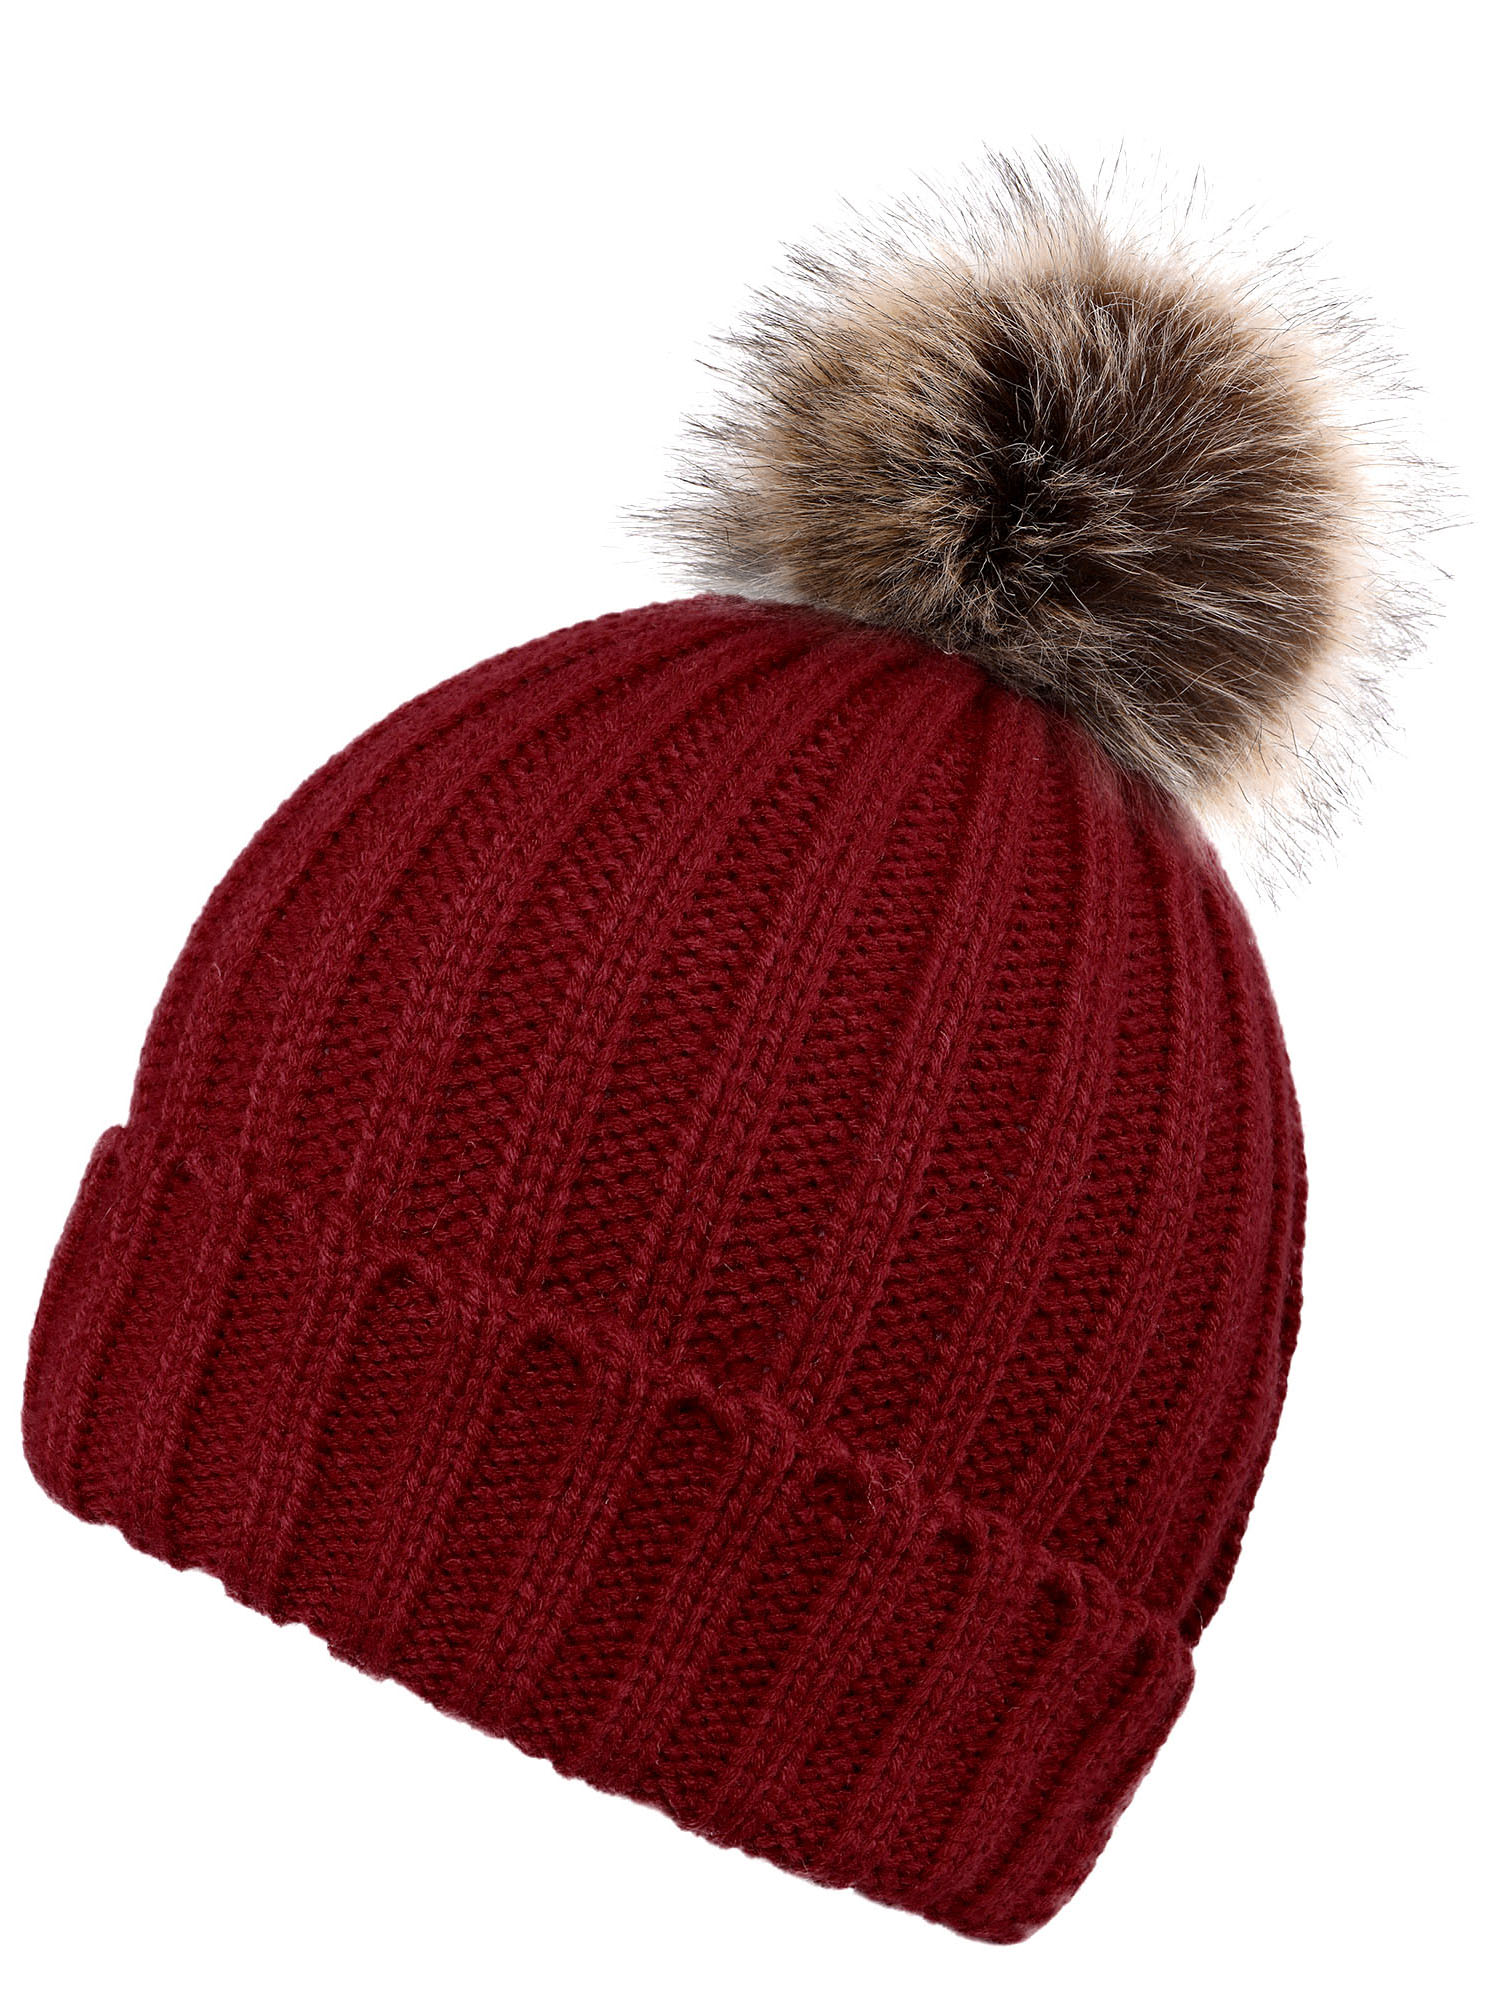 Knit Warm Pom Pom Beanie Hat Red - Walmart.com